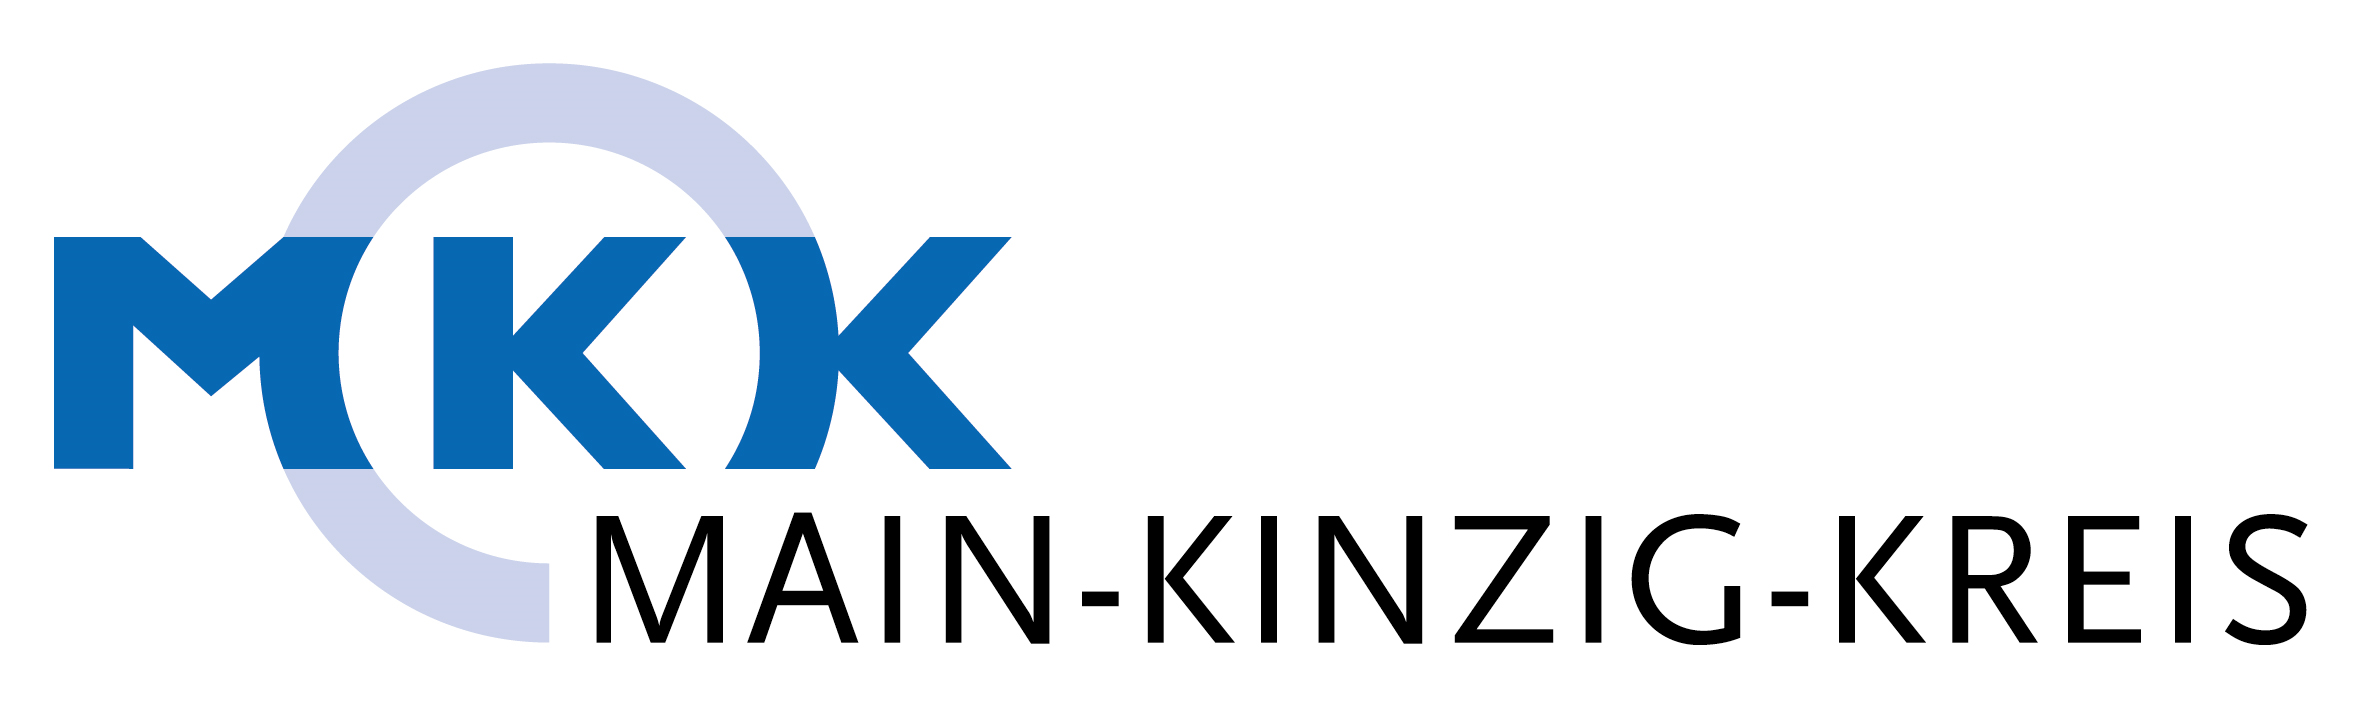 Logo MKK Main-Kinzig-Kreis